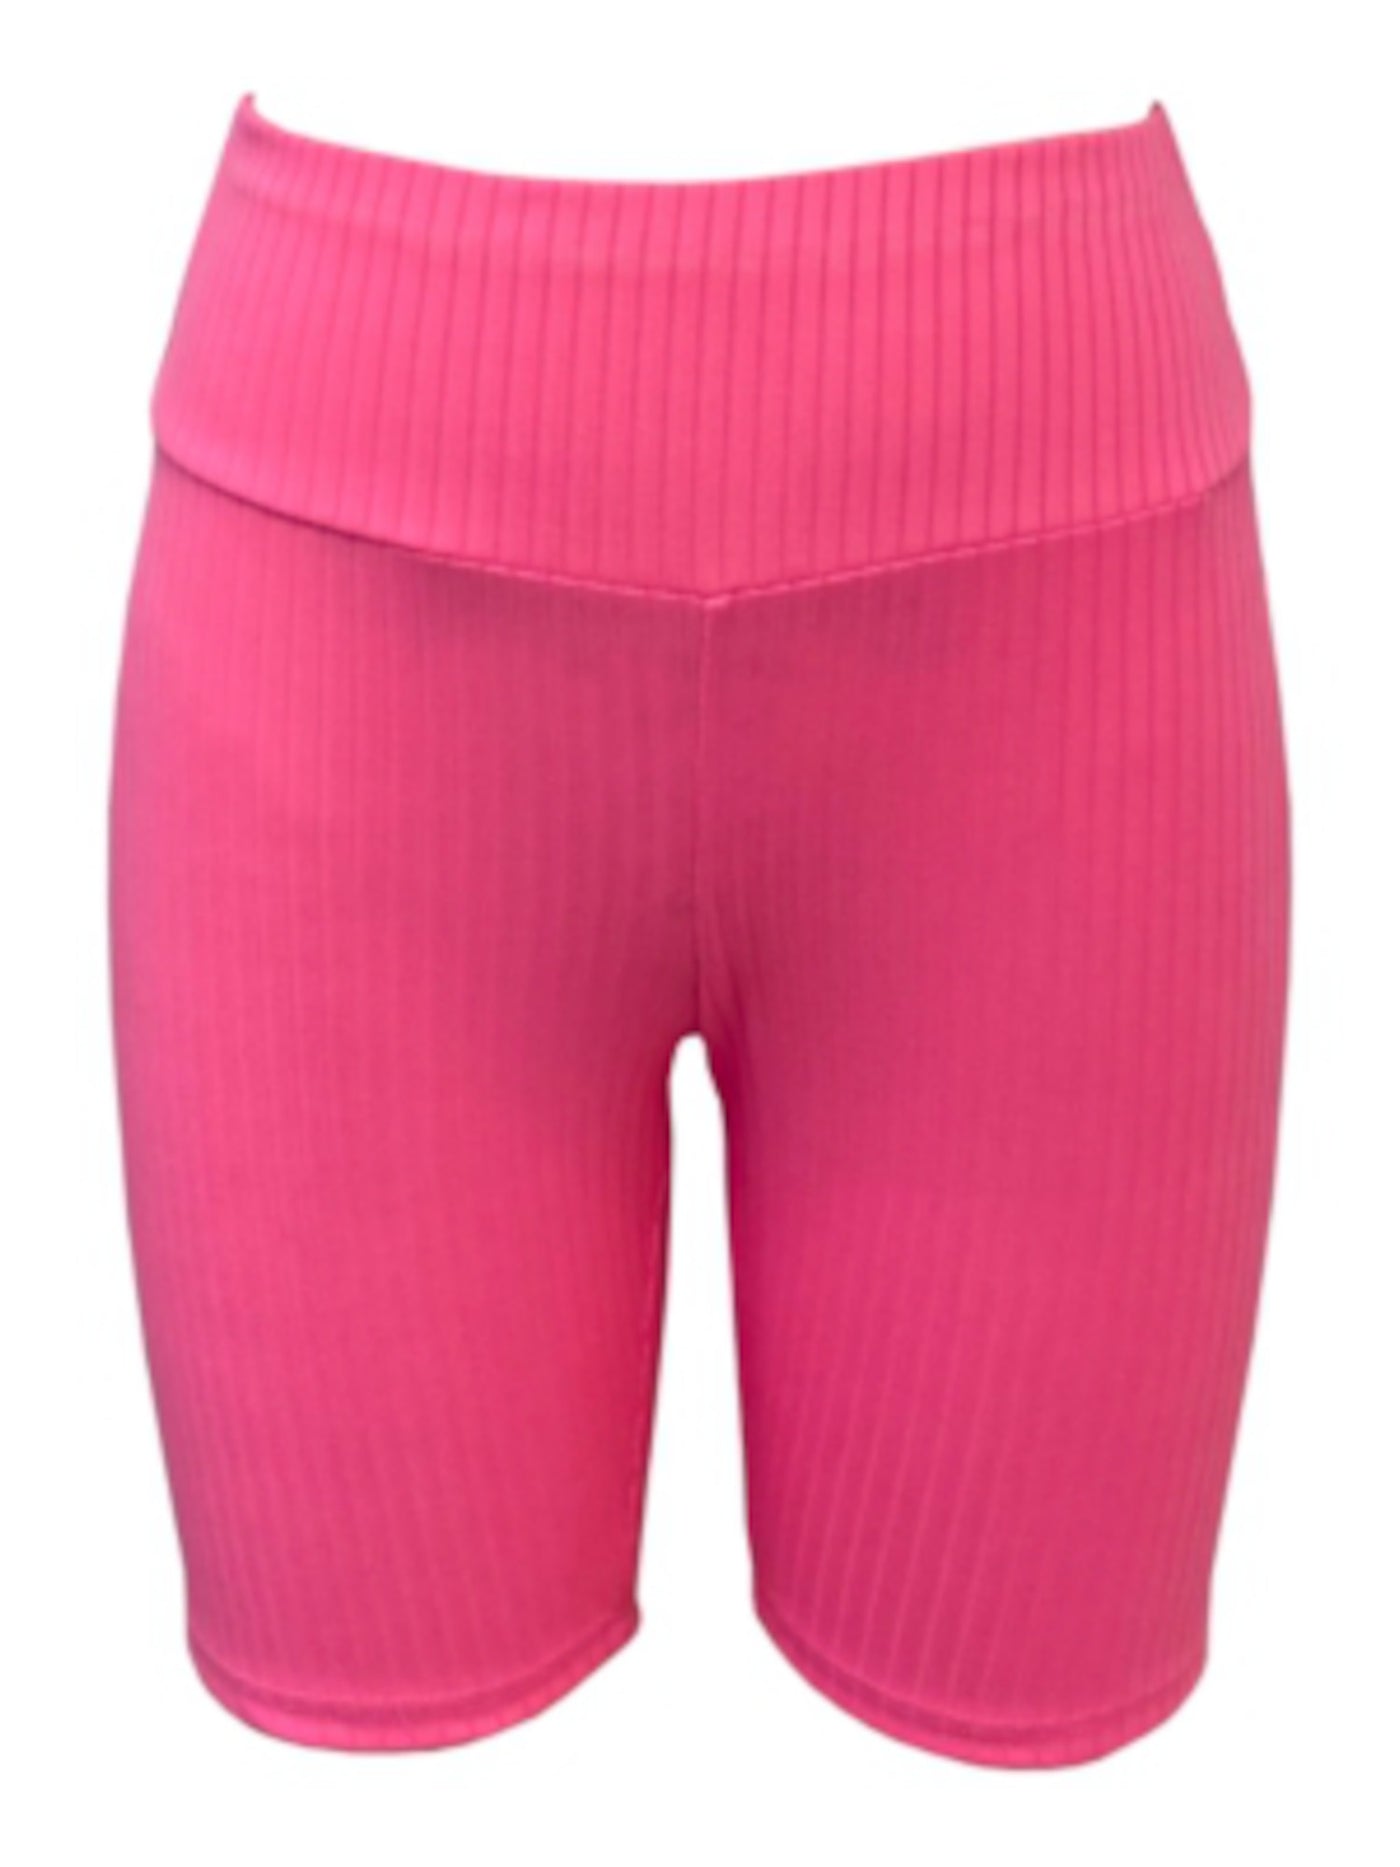 JENNI Intimates Pink Bike-Short Inspired Sleep Shorts S